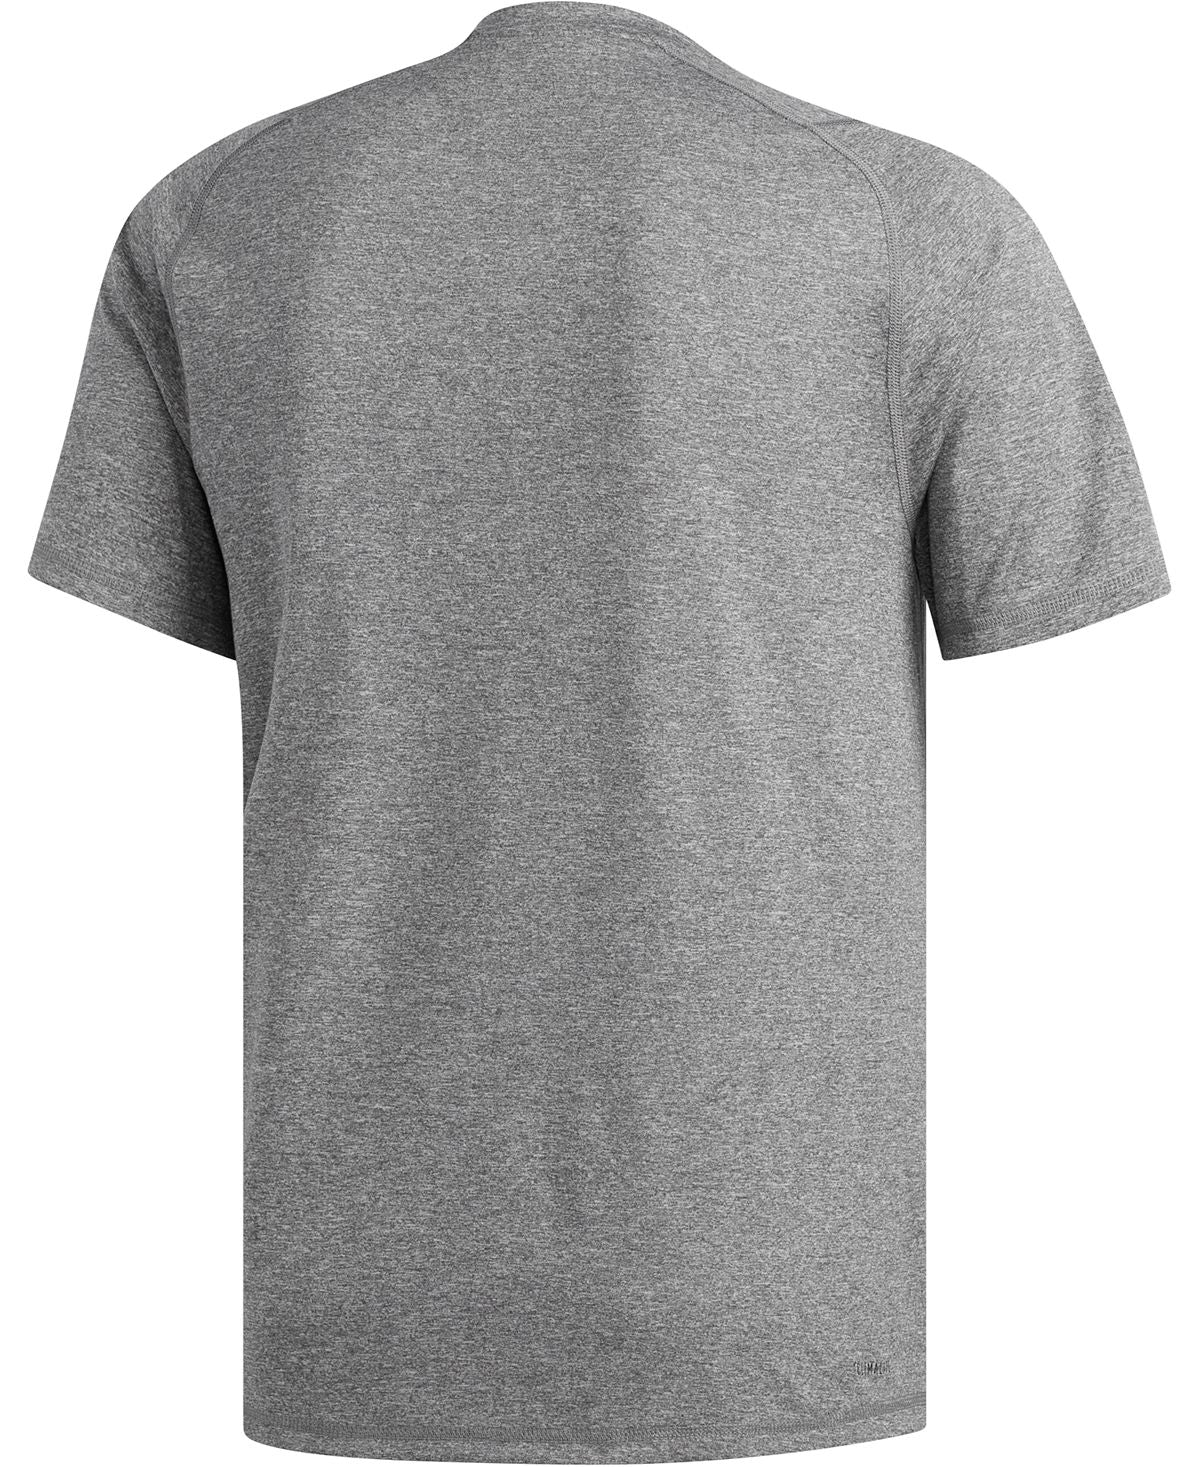 Adidas Freelift Climalitet-shirt Medium Grey Heather